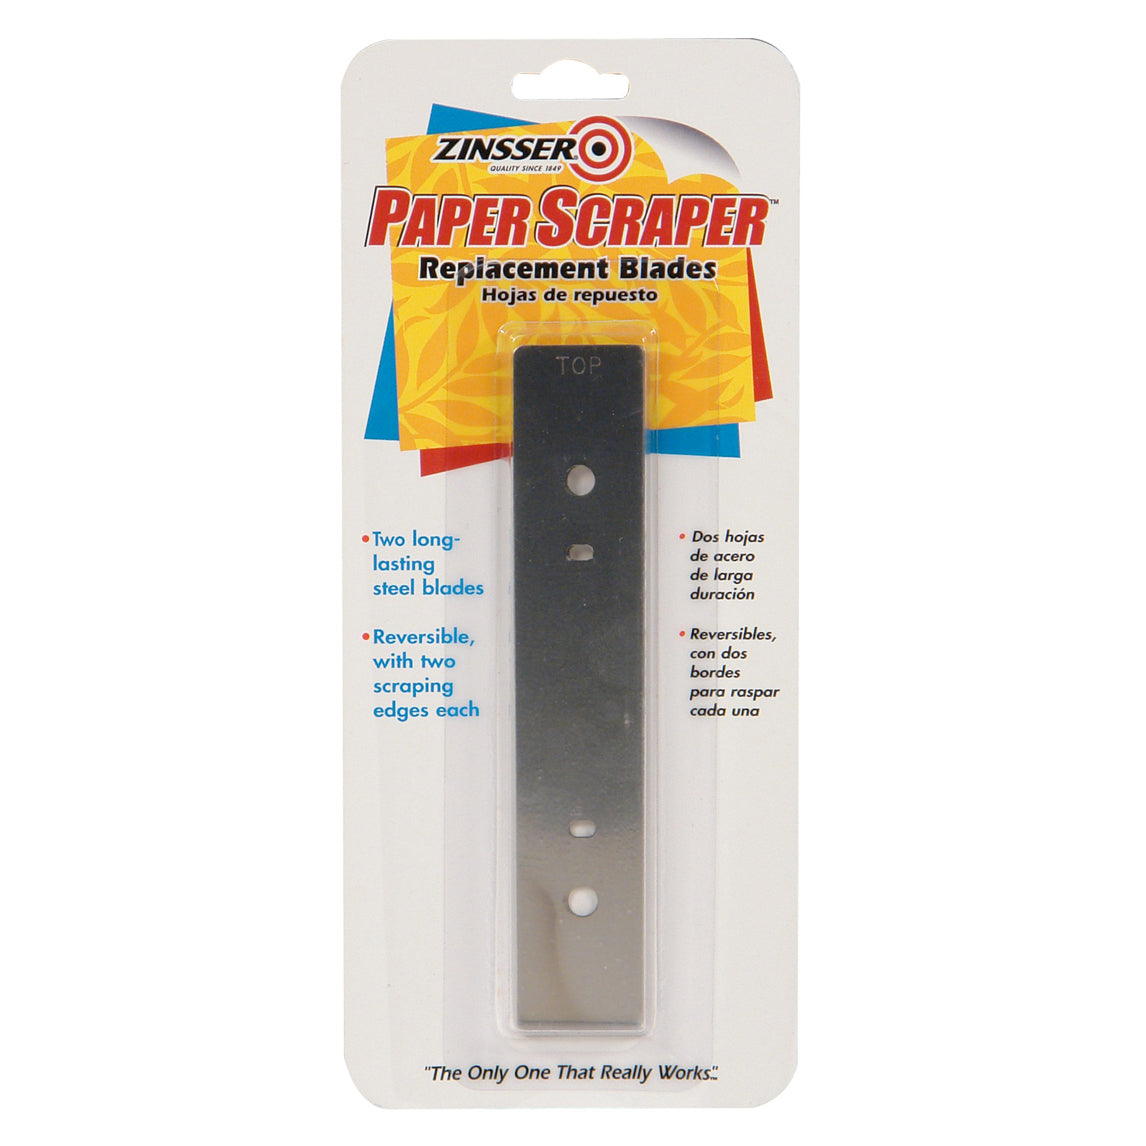 Zinsser Paper Scraper